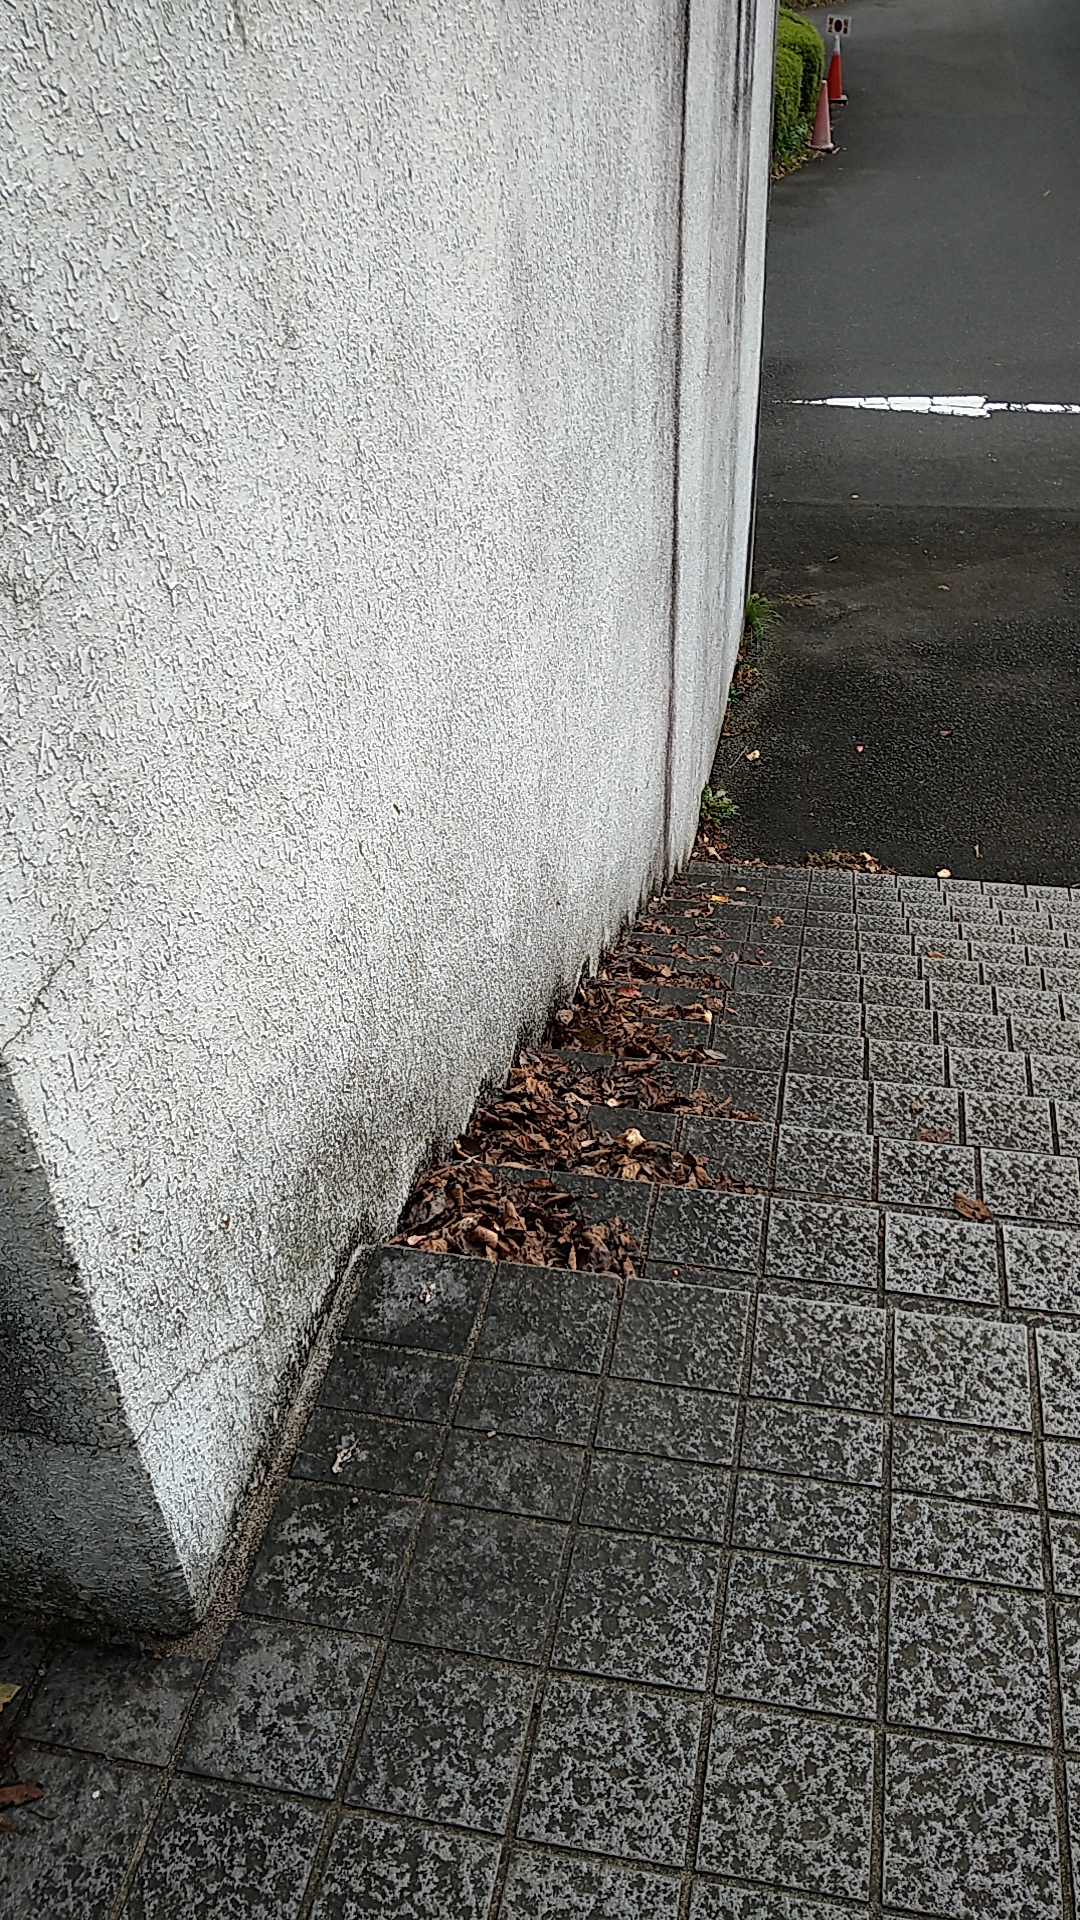 階段の落ち葉